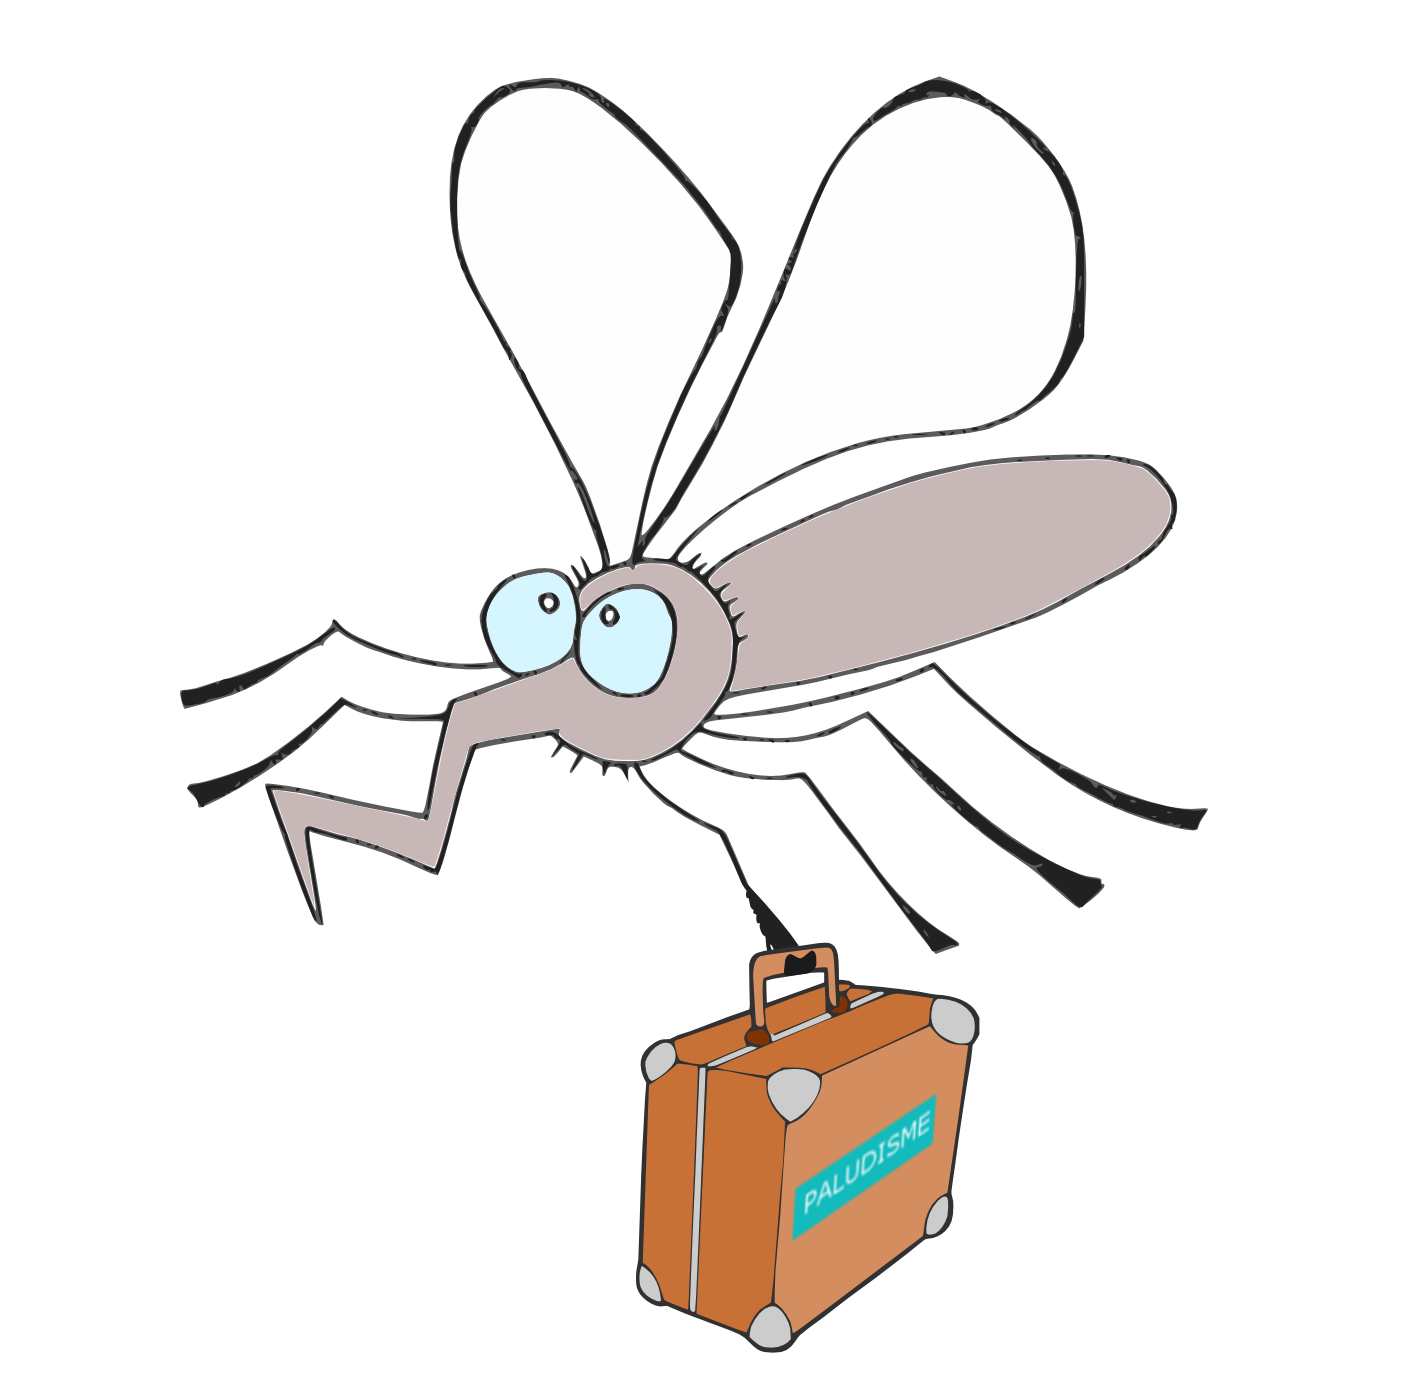 Mosquito llevando maleta con la enfermedad paludismo